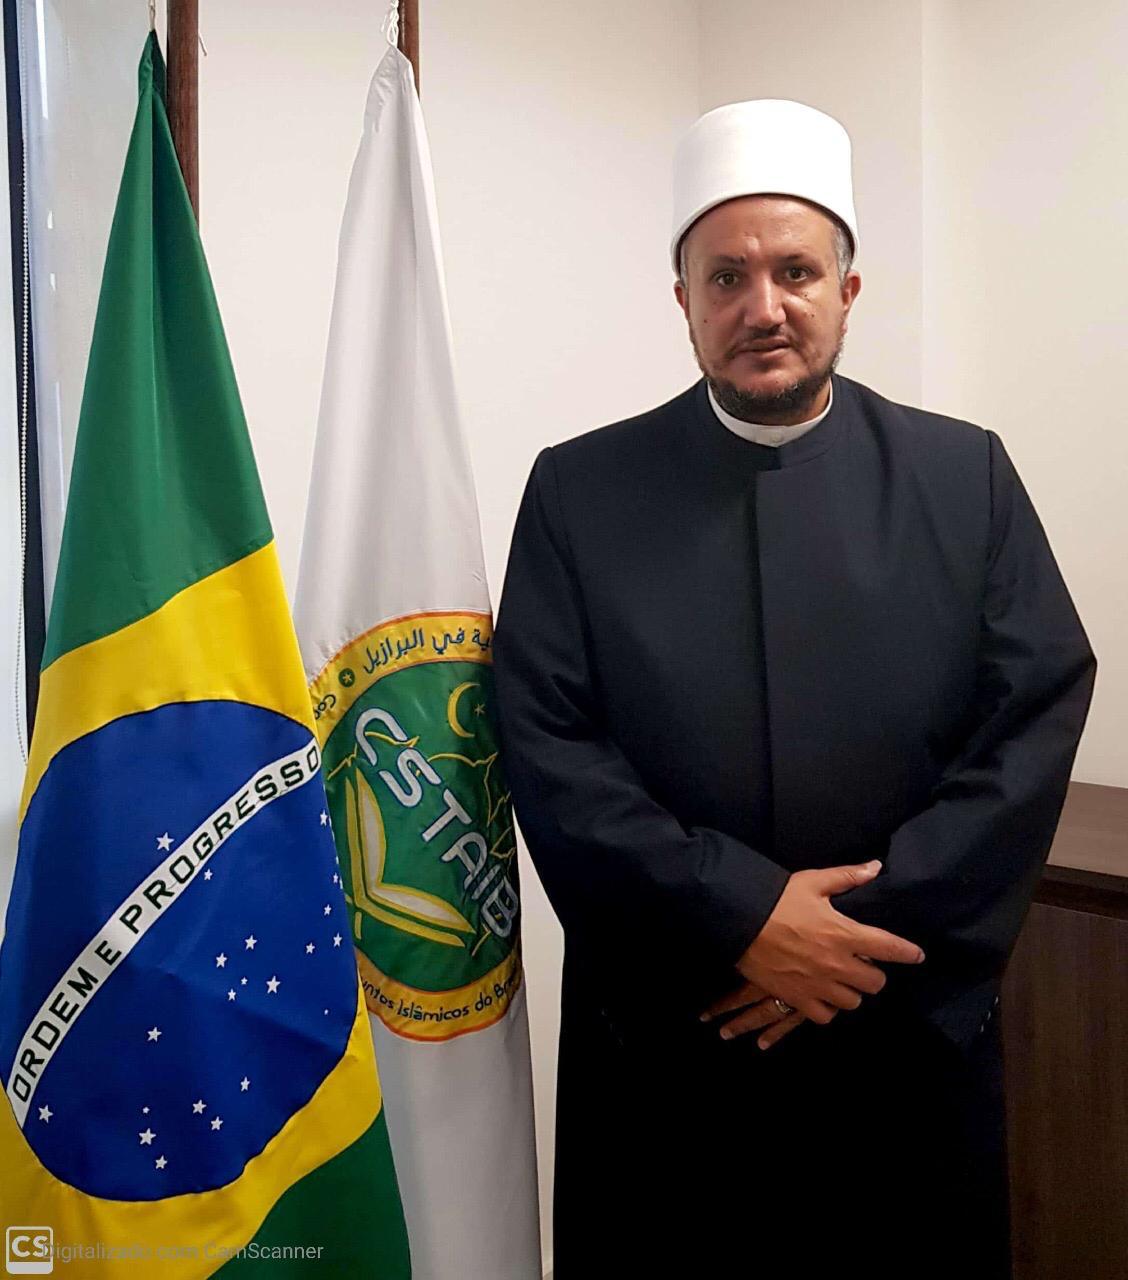 رئيس المجلس الأعلى للأئمة والشؤون الإسلامية بالبرازيل اعتداءات الحوثيين الإرهابية على المملكة حالة من الجنون والهستيريا